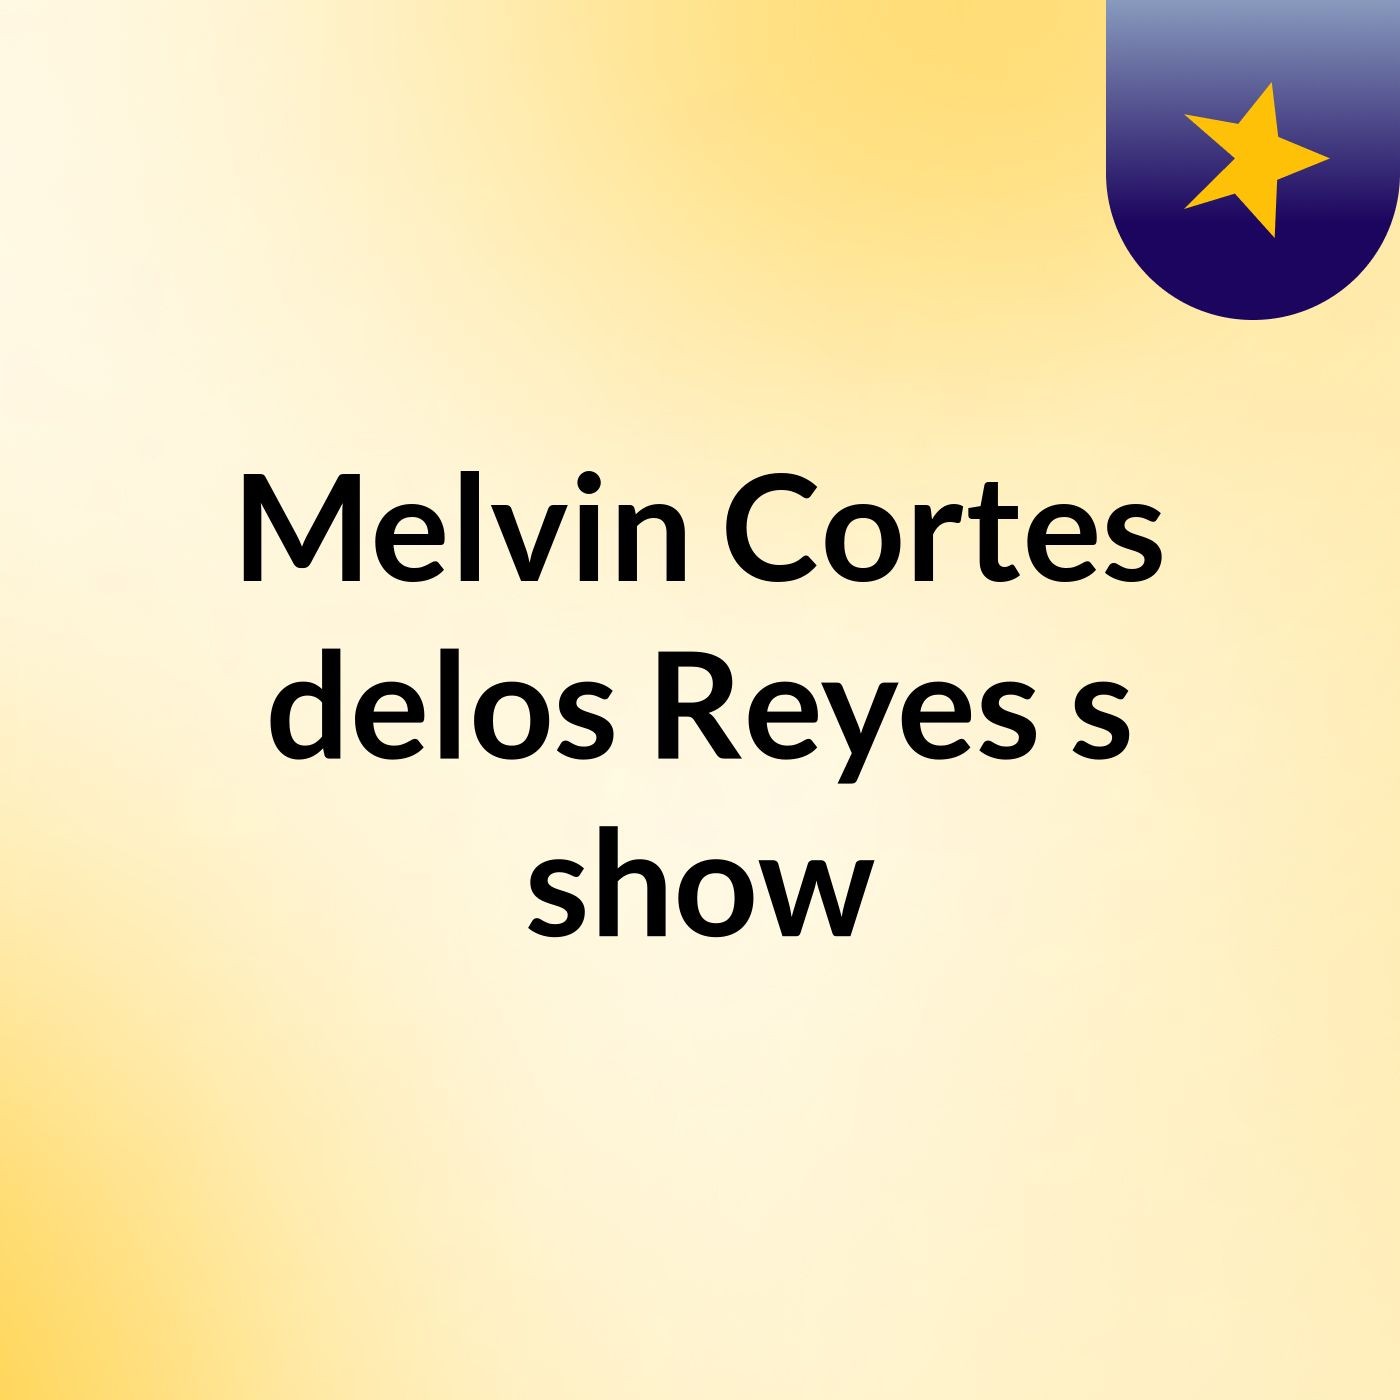 Melvin Cortes delos Reyes's show